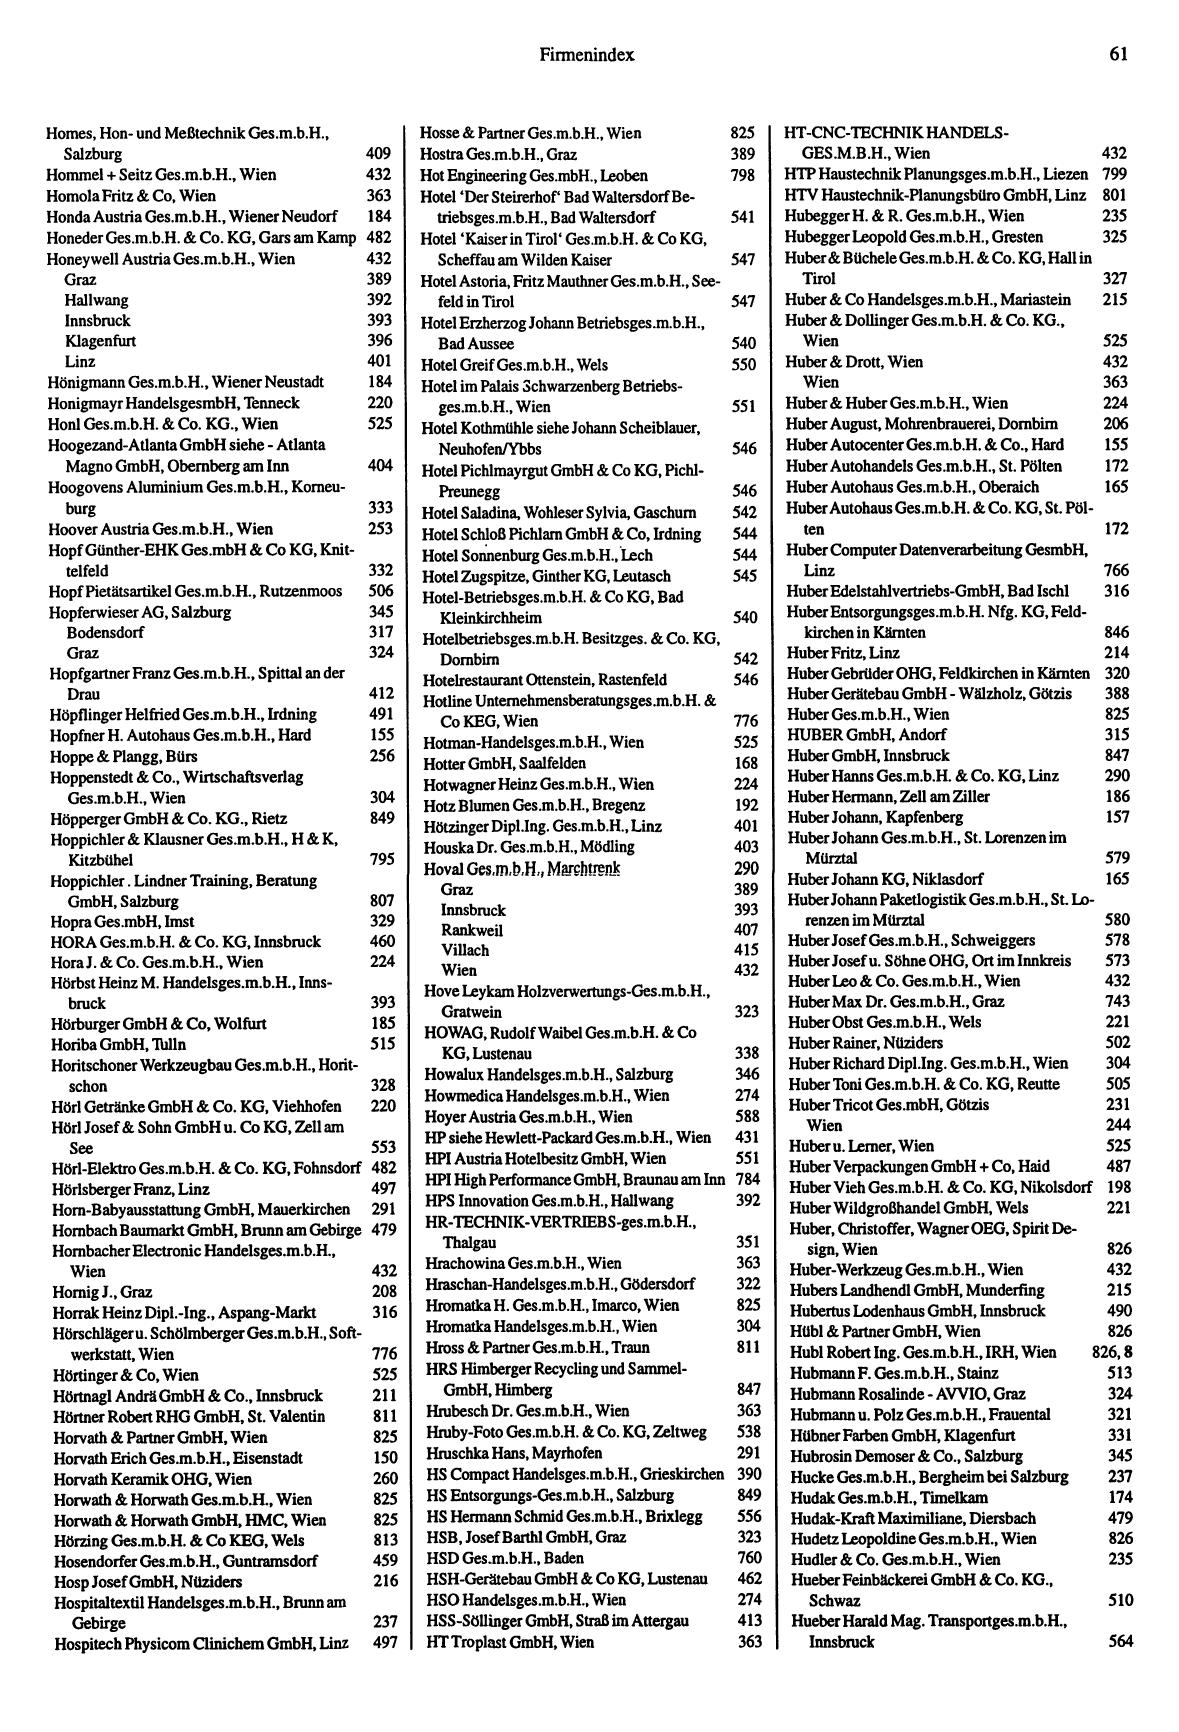 Handel- und Dienstleistungs-Compass 1997/98 - Page 65